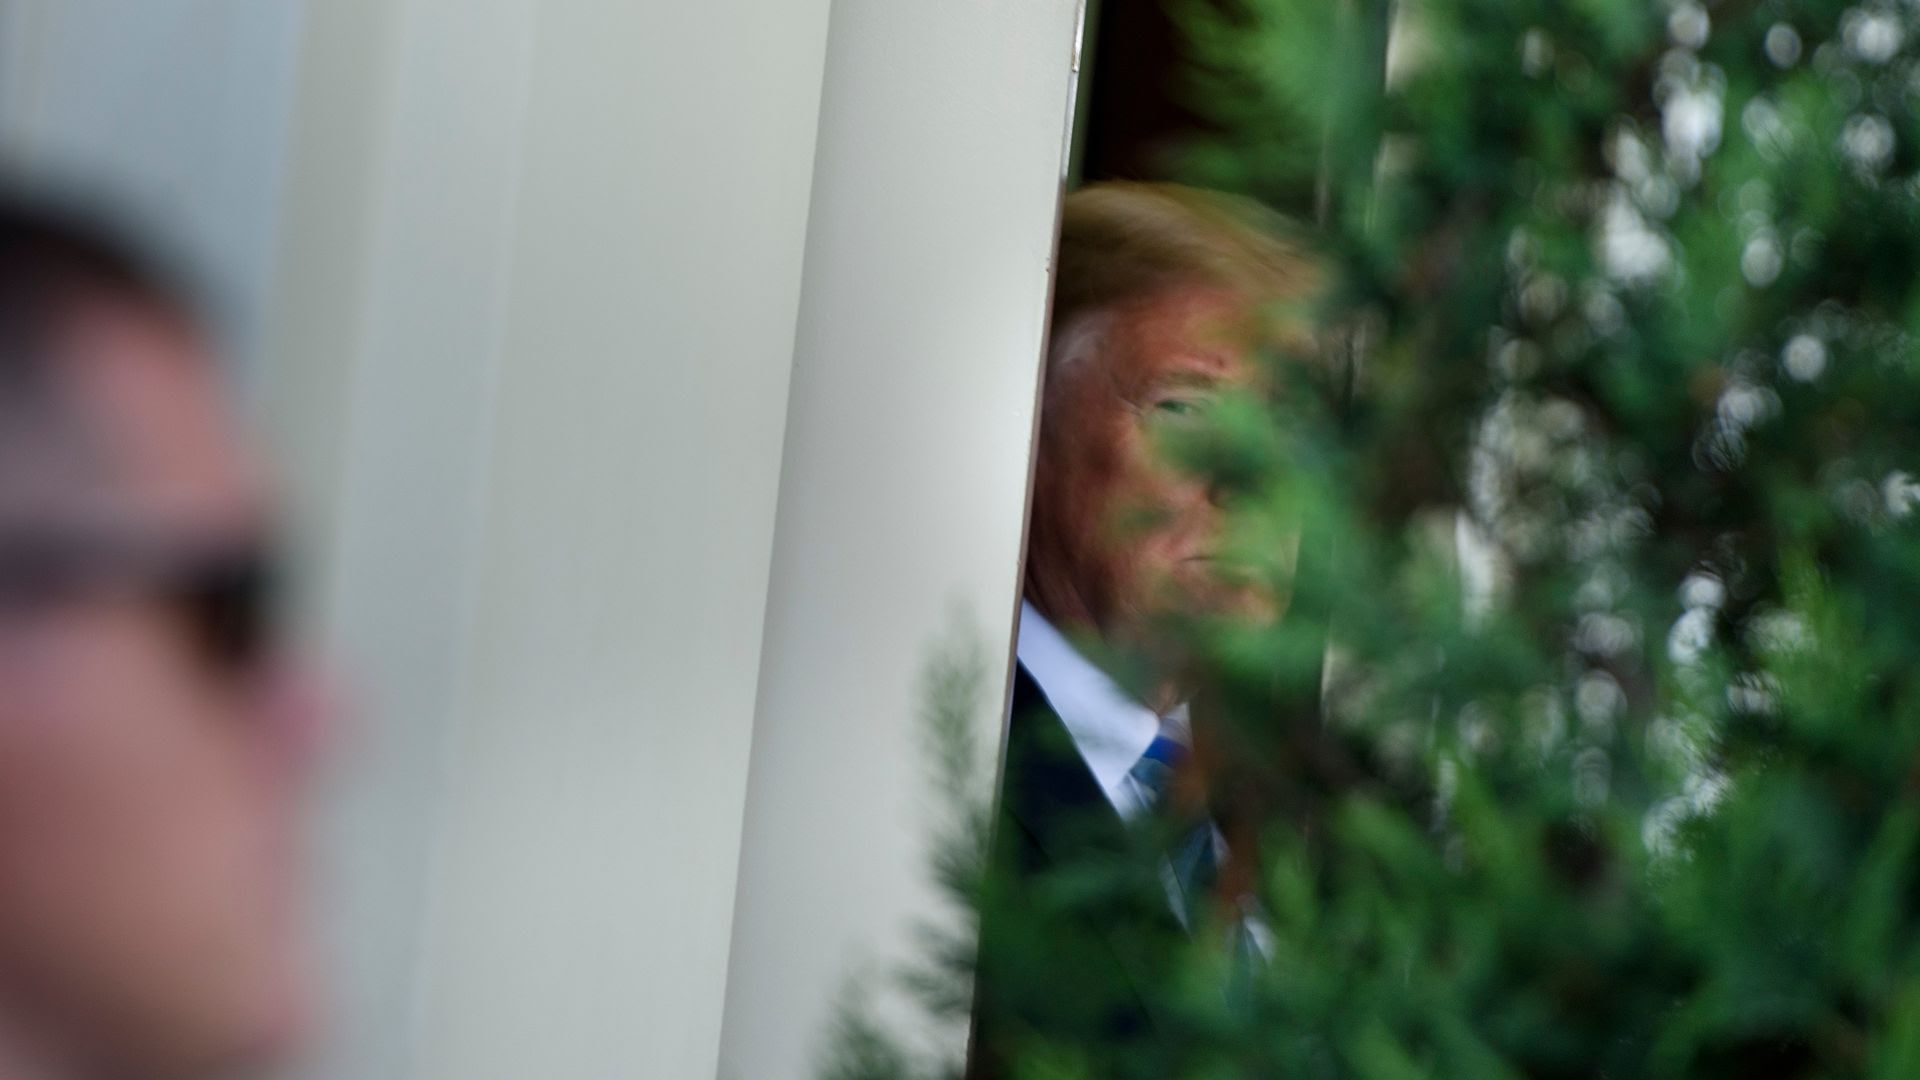 Trump lurks behind a bush at the White House 